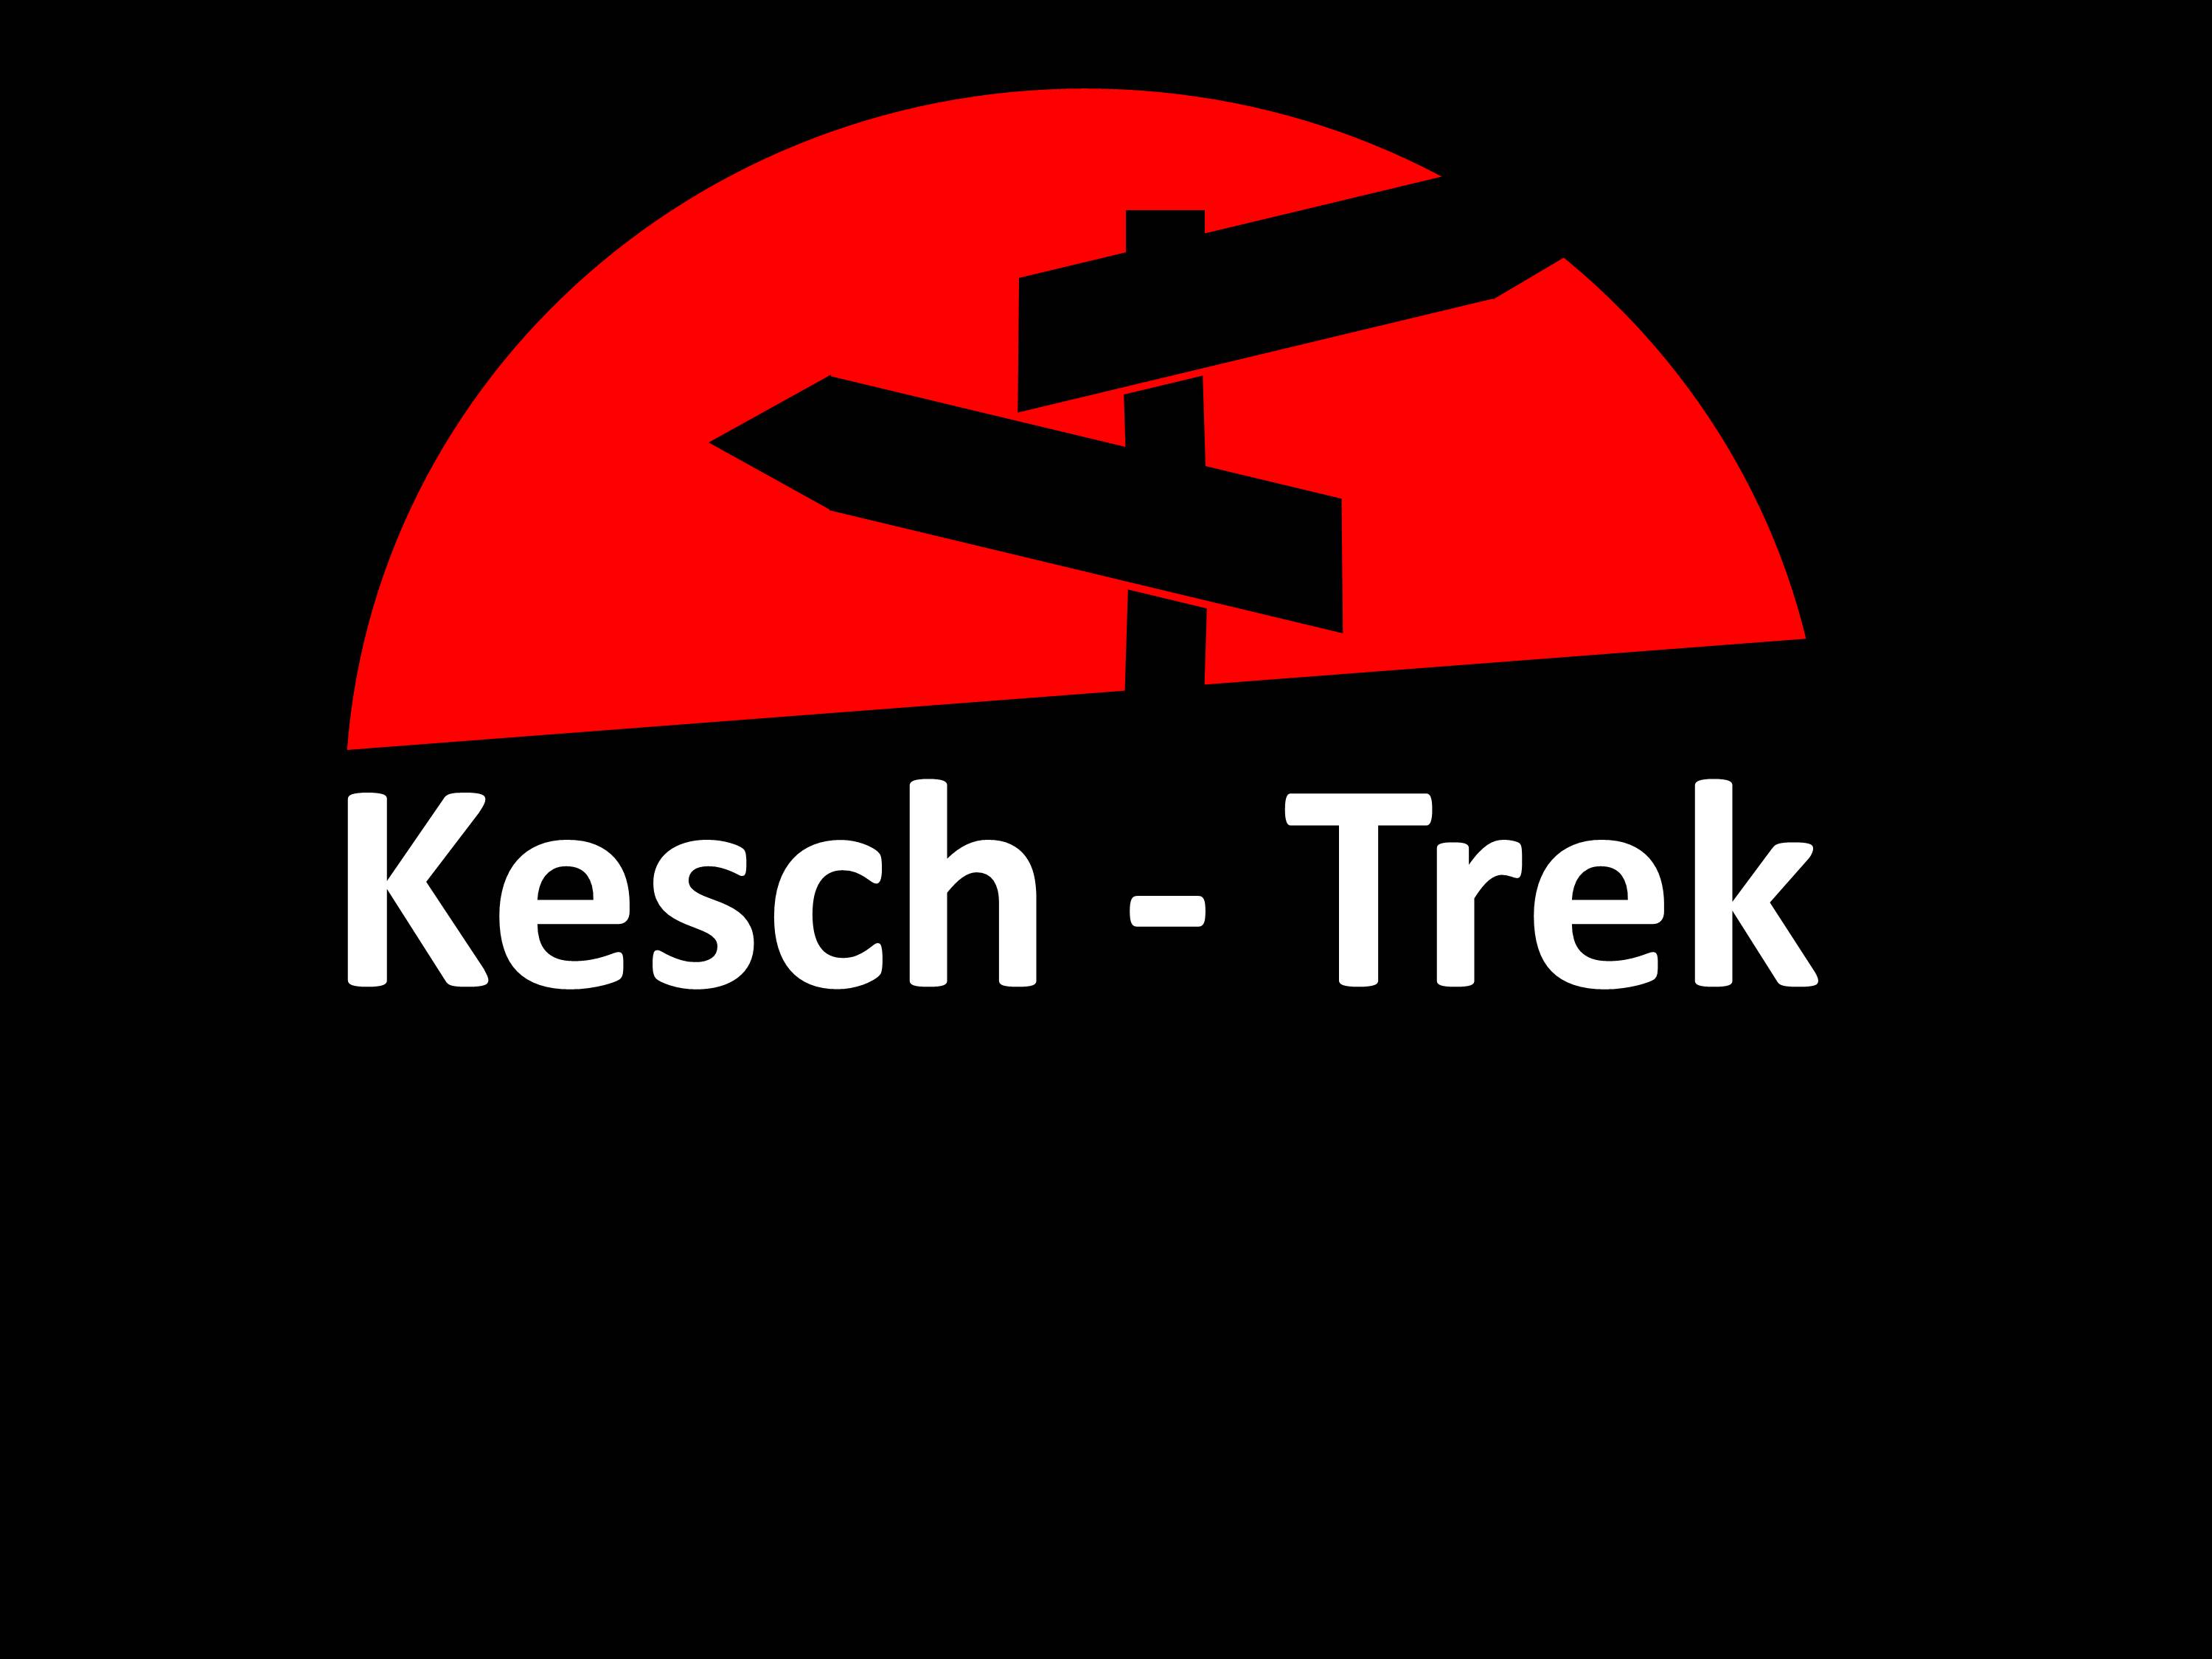 Kesch Trek 2o22